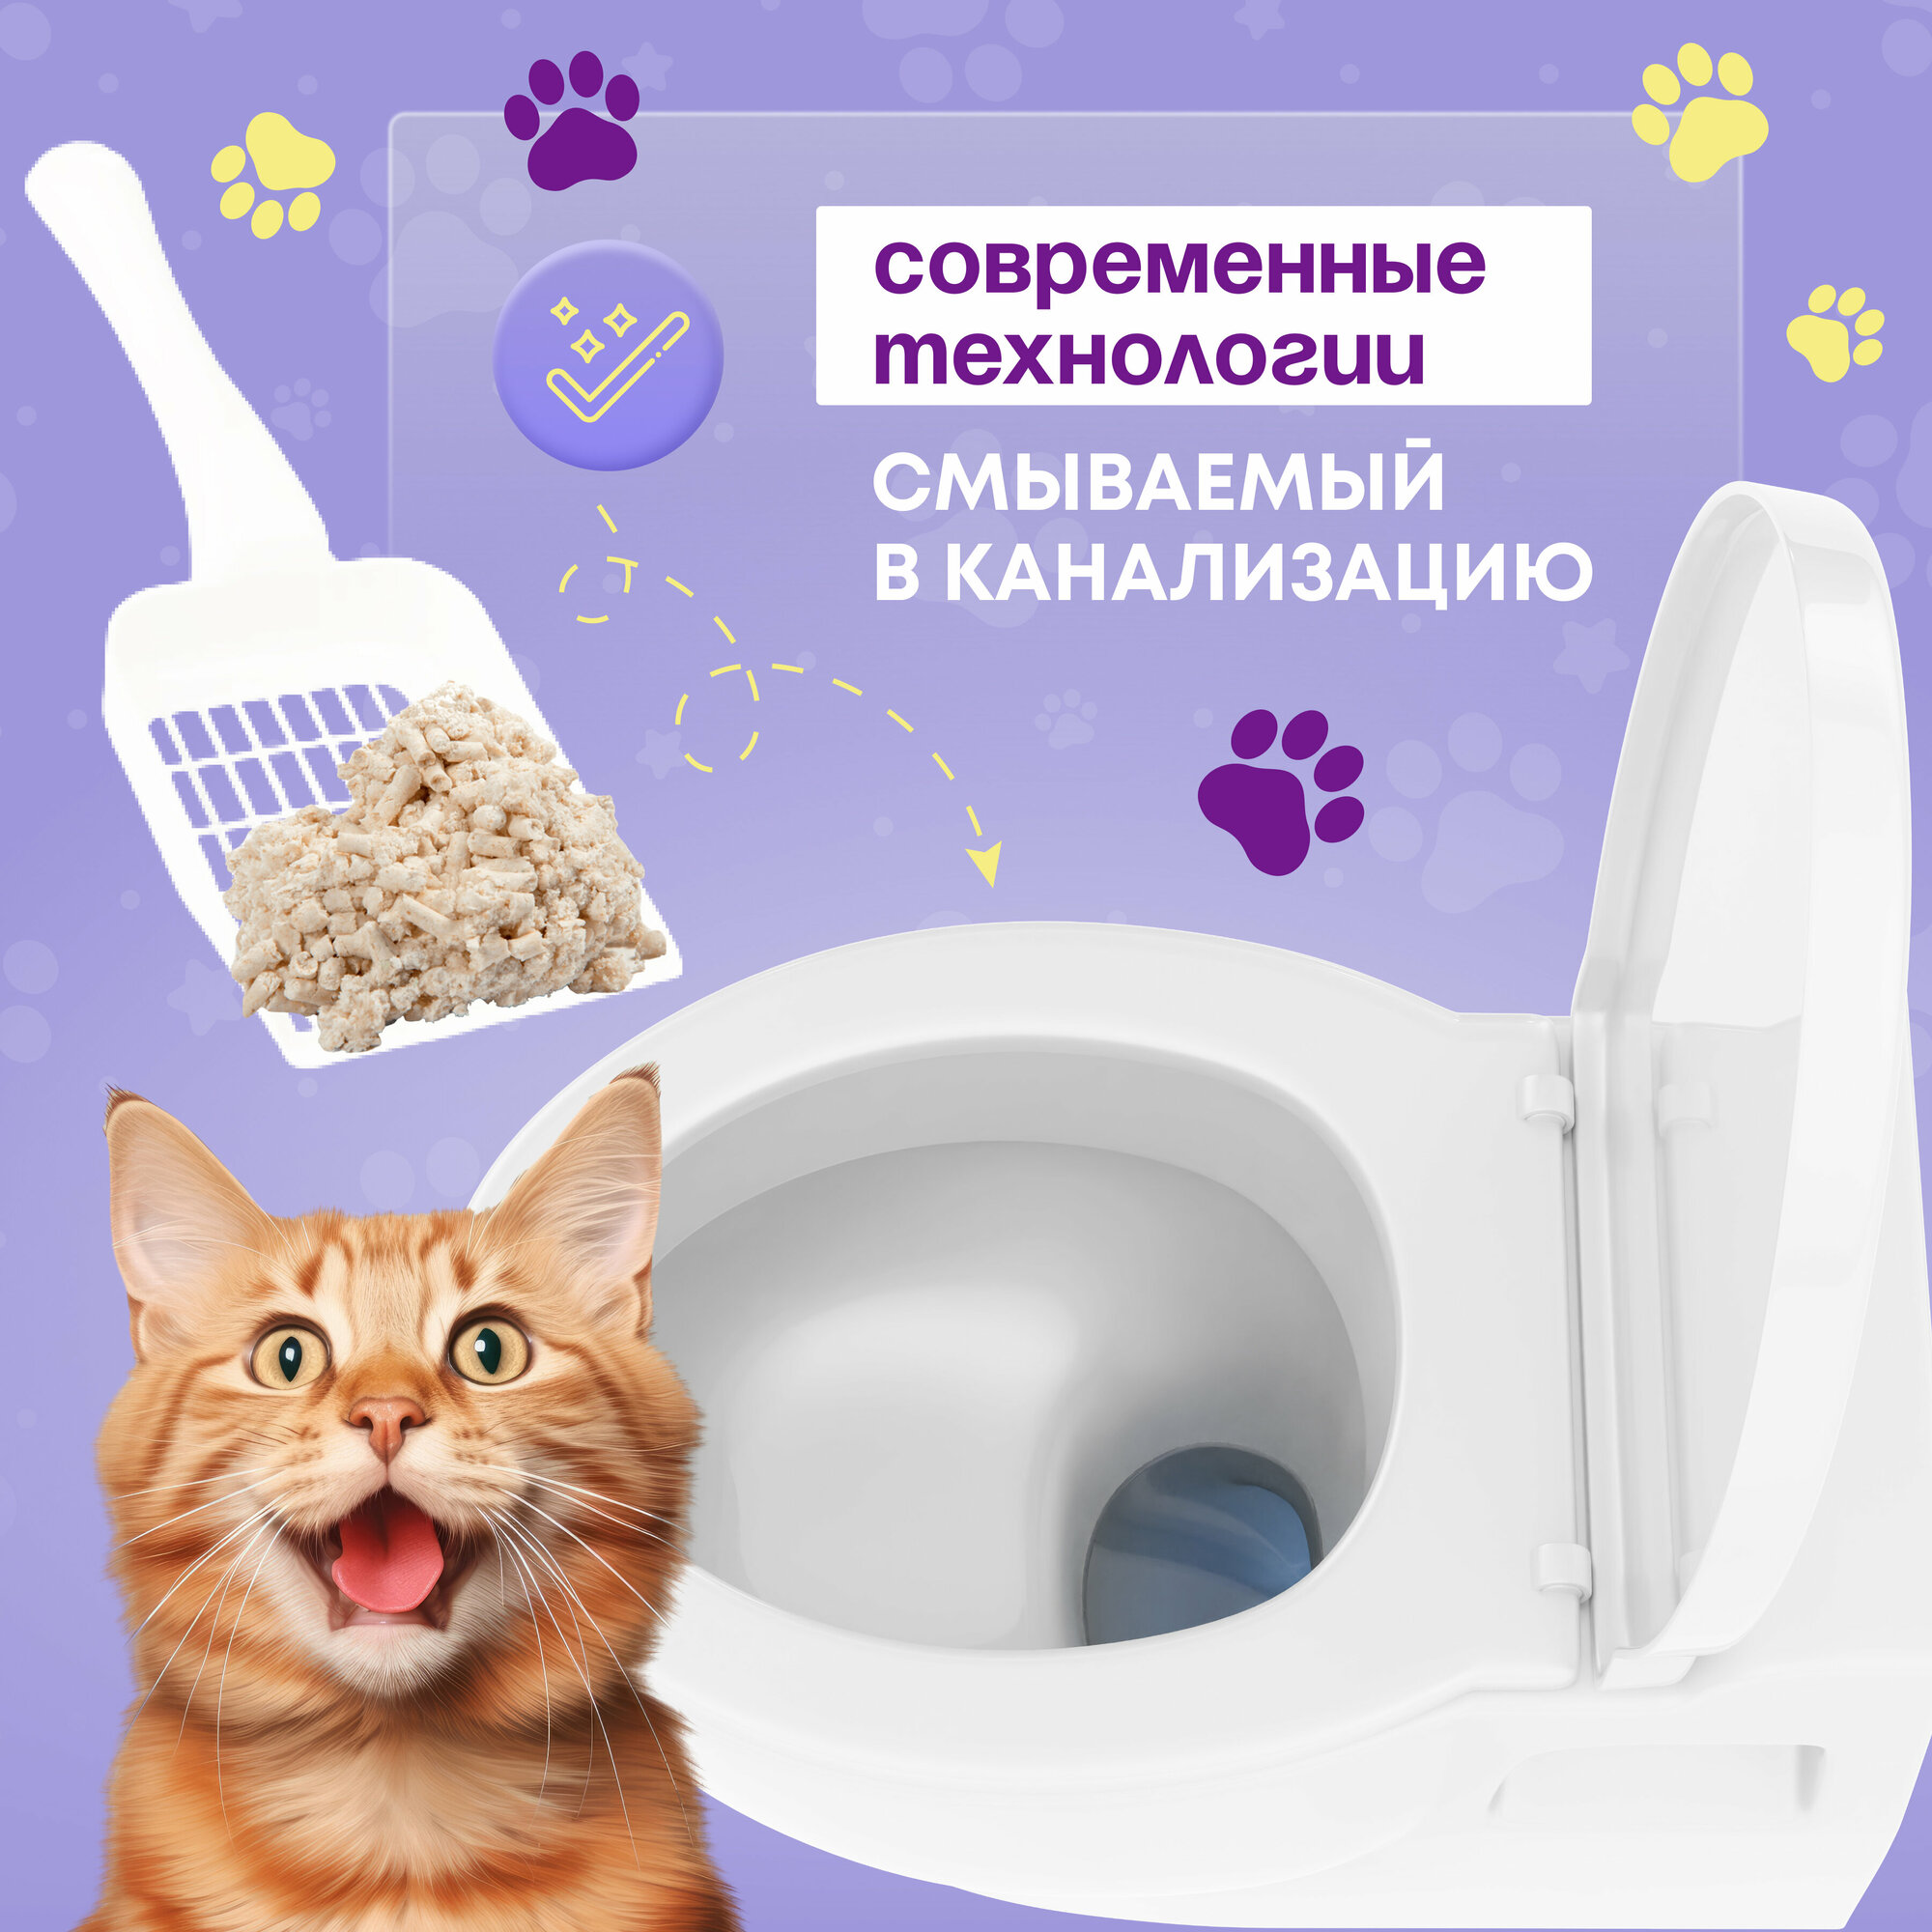 Наполнитель для кошачьего туалета Neo Loo Life, наполнитель для кошачьего туалета комкующийся Neo Loo Life, KOCHO, впитывает 6 литров (на основе соевых бобов) смываемый в канализацию, 6 л, Япония / Для кошачьего туалета наполнитель тофу.